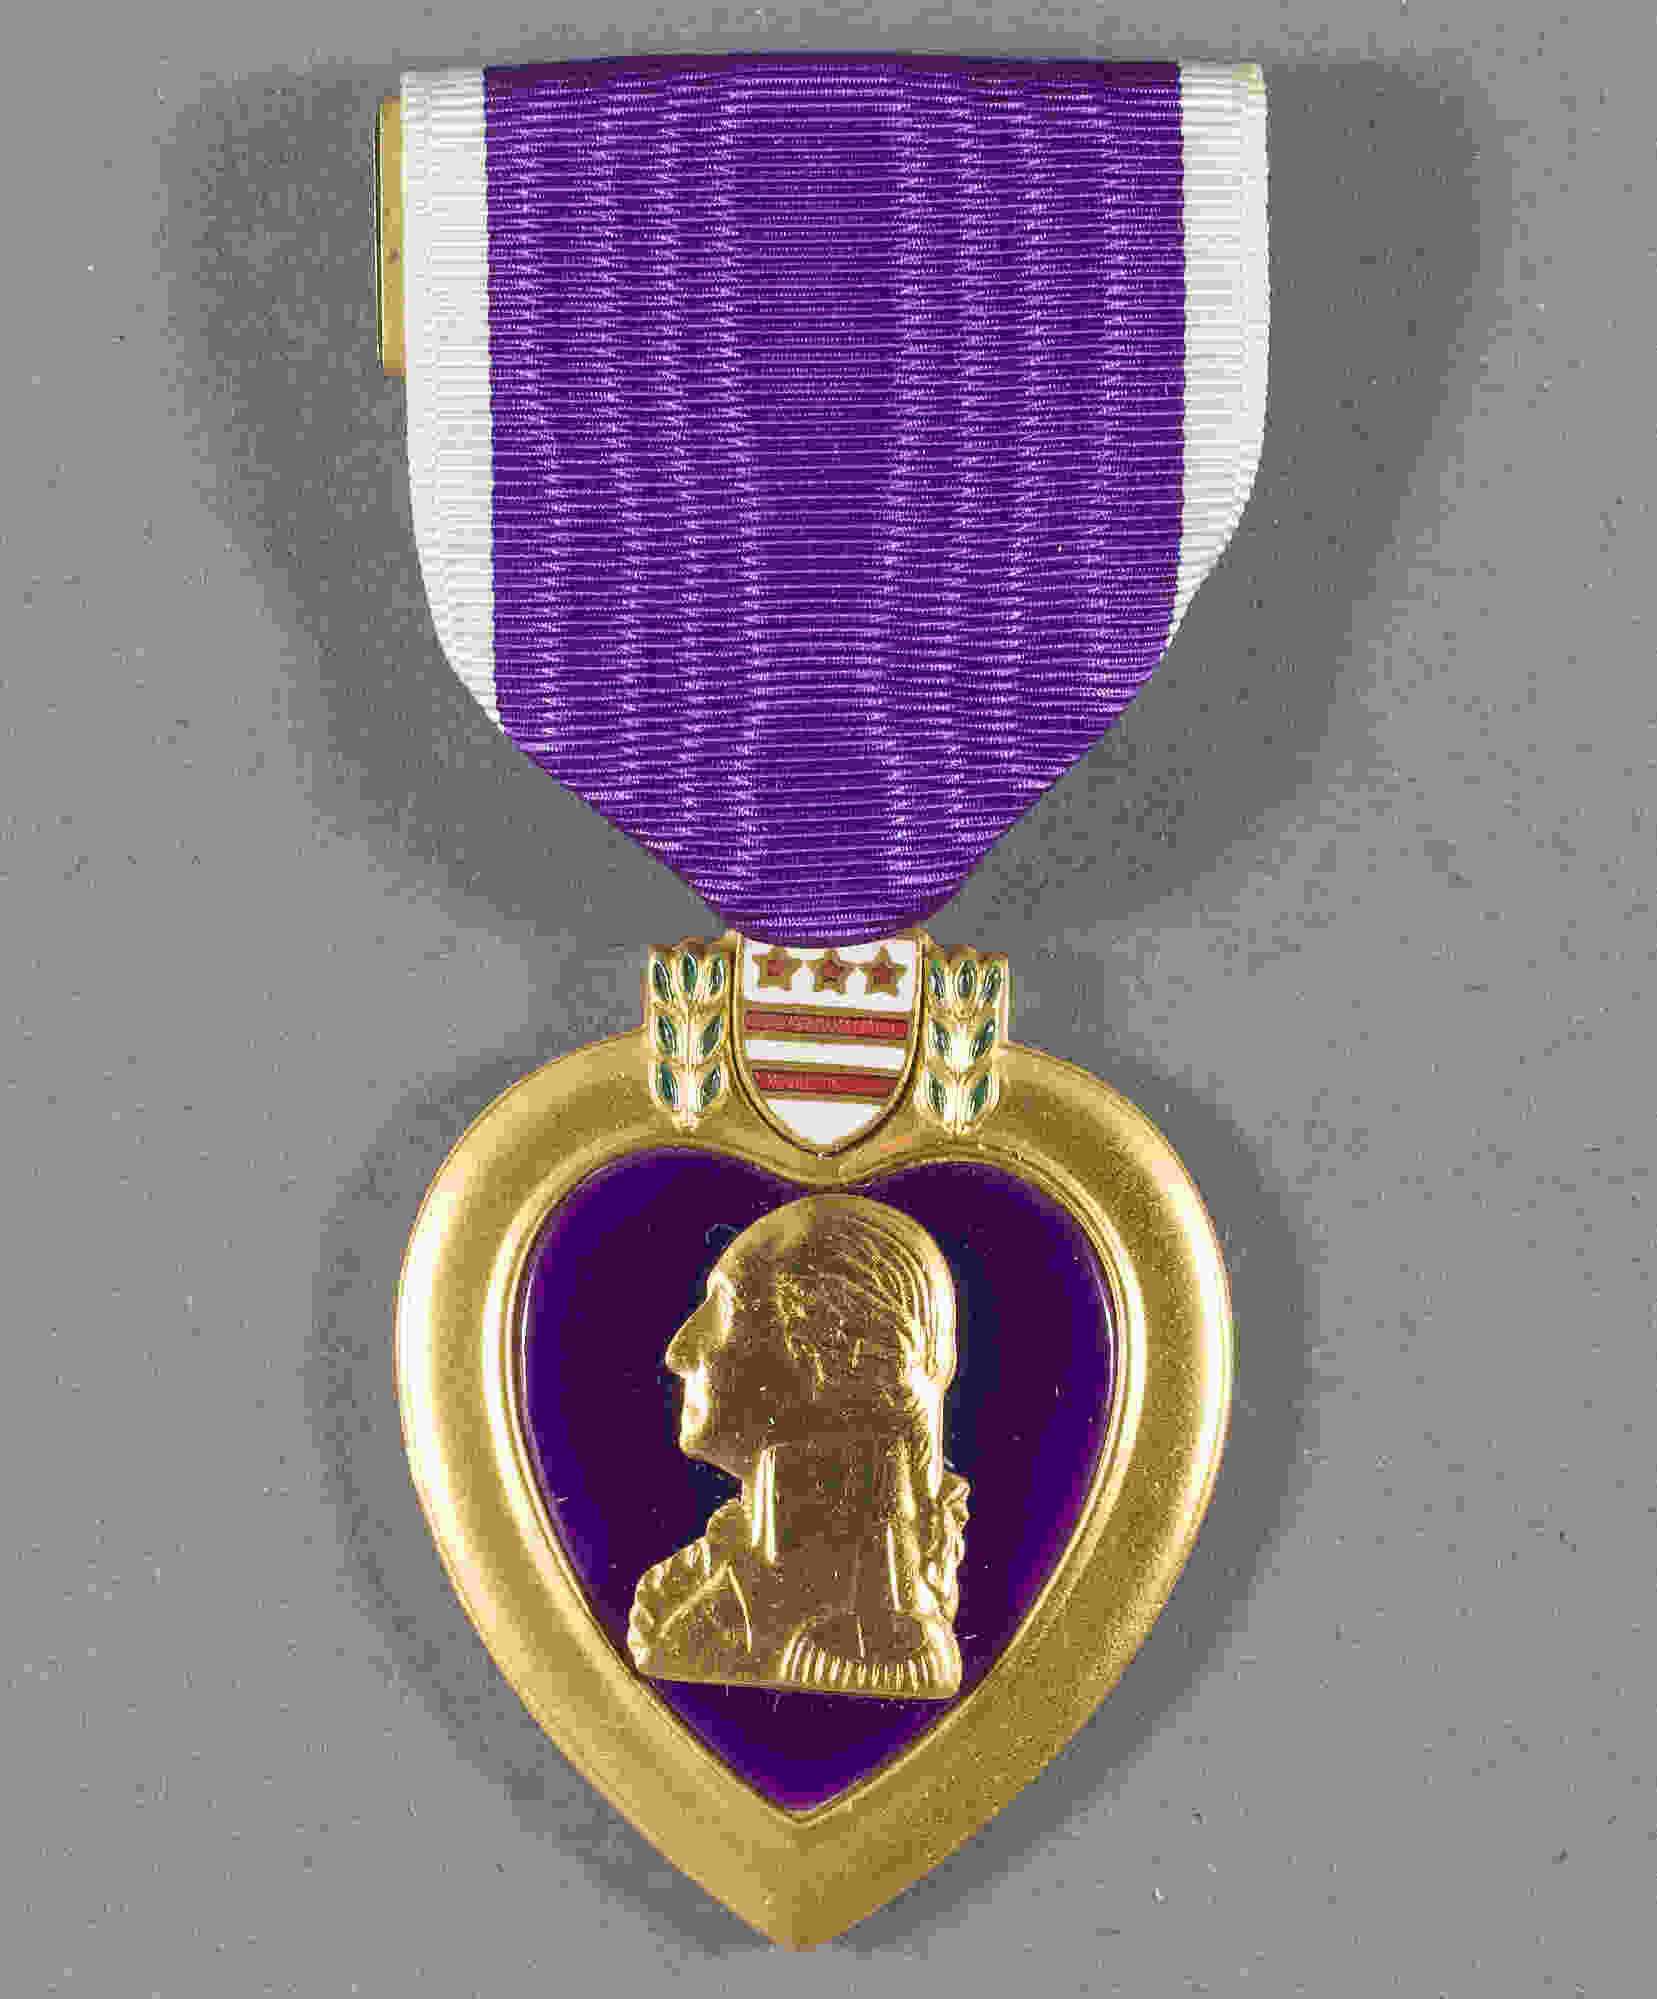 purpleheart's avatar